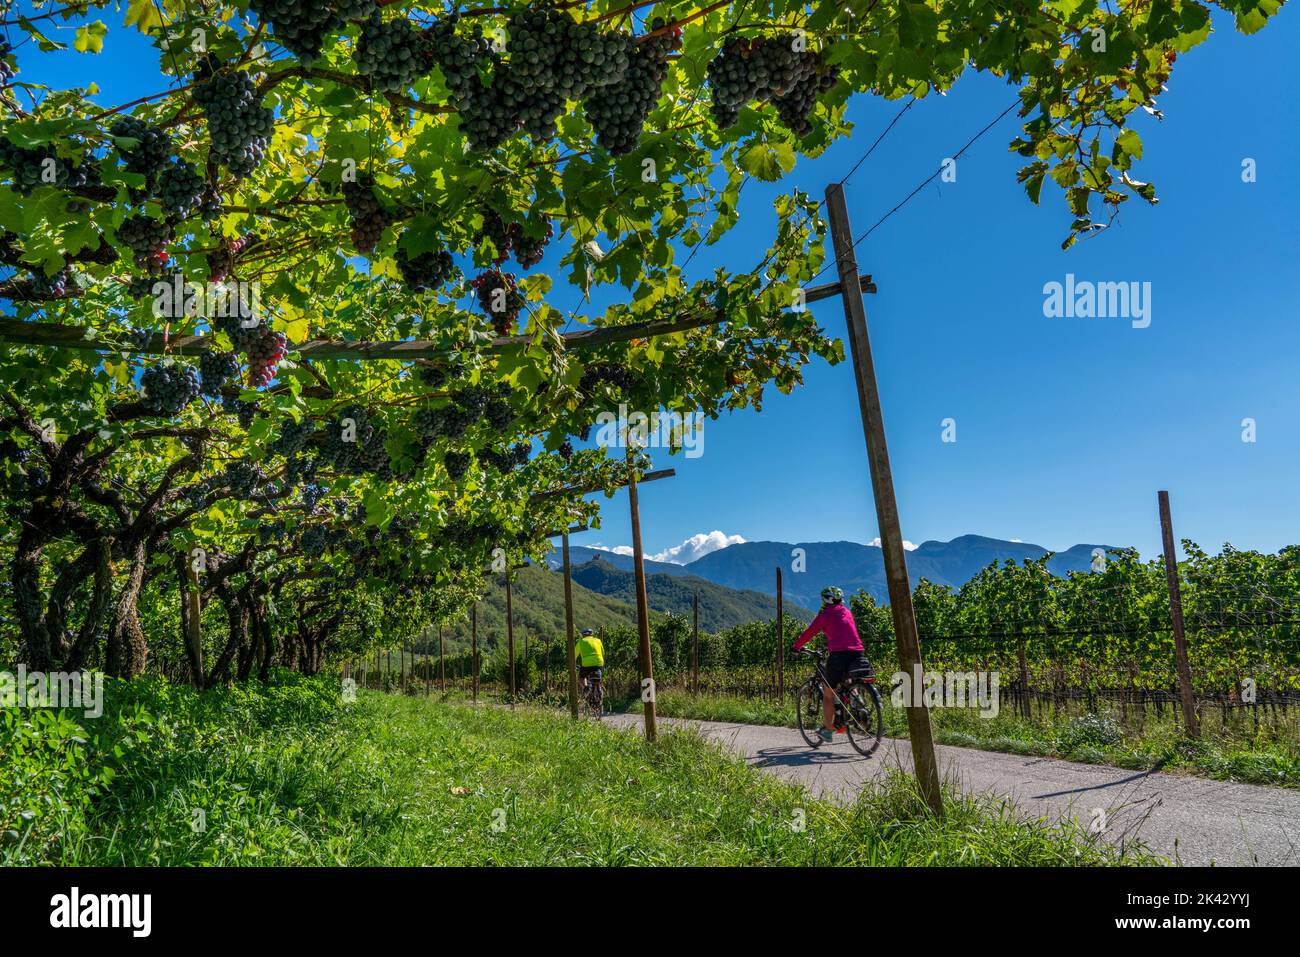 Percorso ciclabile attraverso le zone viticole dell'Alto Adige, vicino a Caldaro sulla strada del vino, poco prima della vendemmia, Alto Adige, Italia, Foto Stock